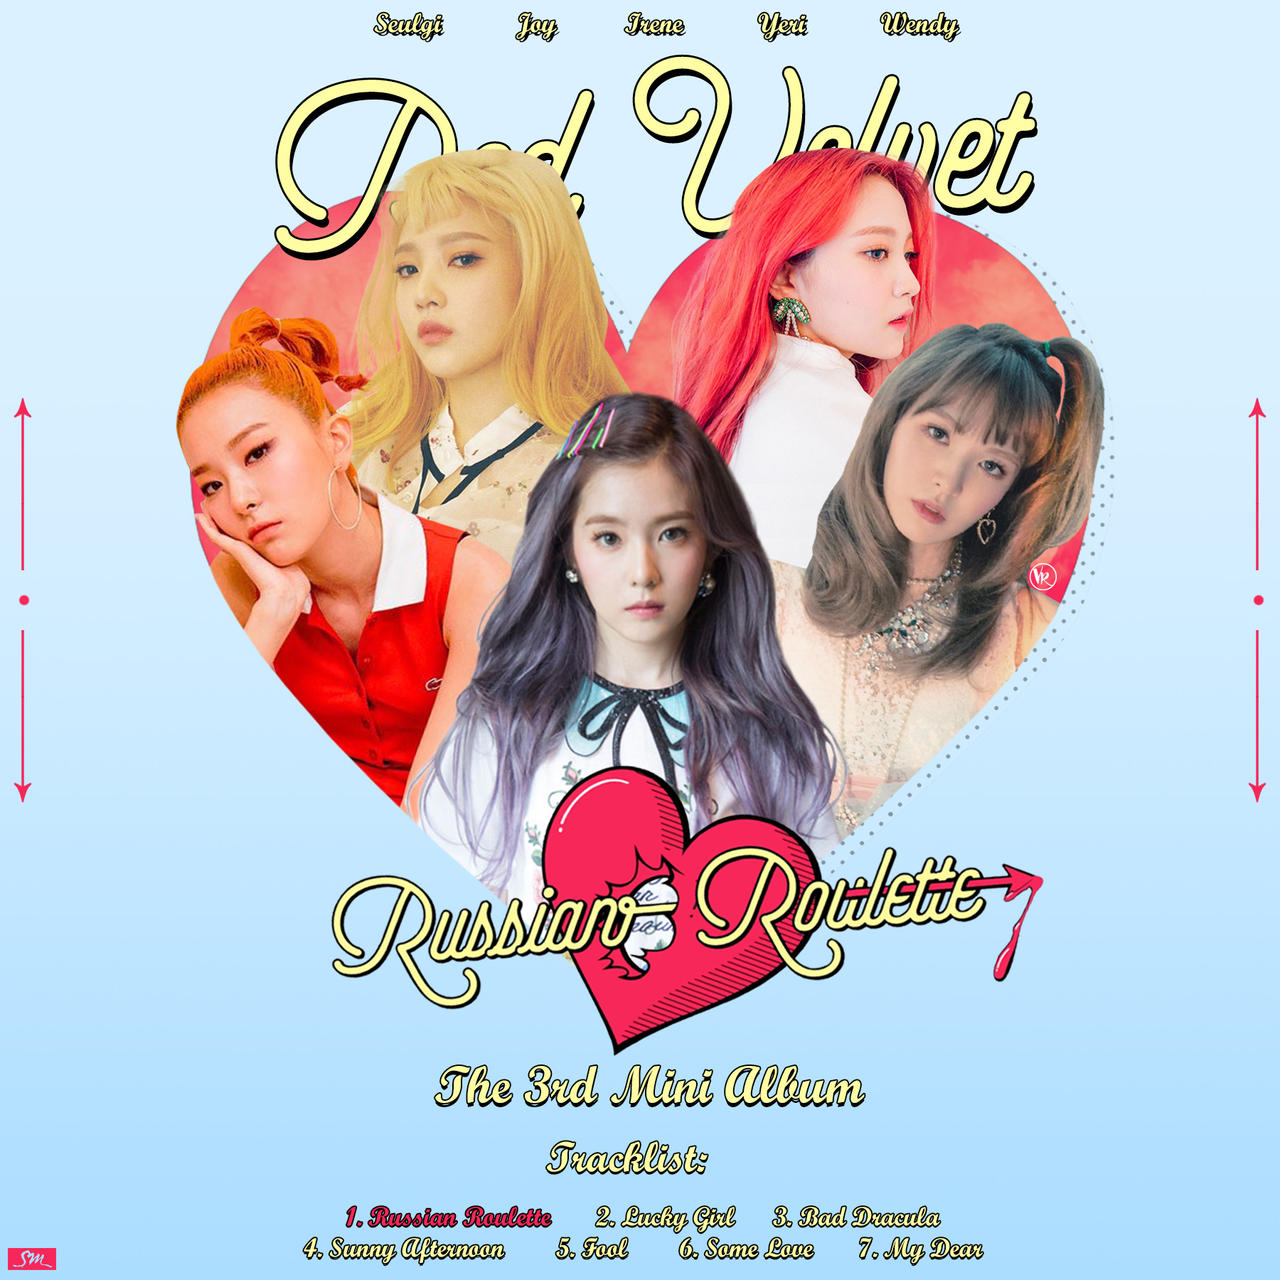 Red Velvet Russian Roulette Poster